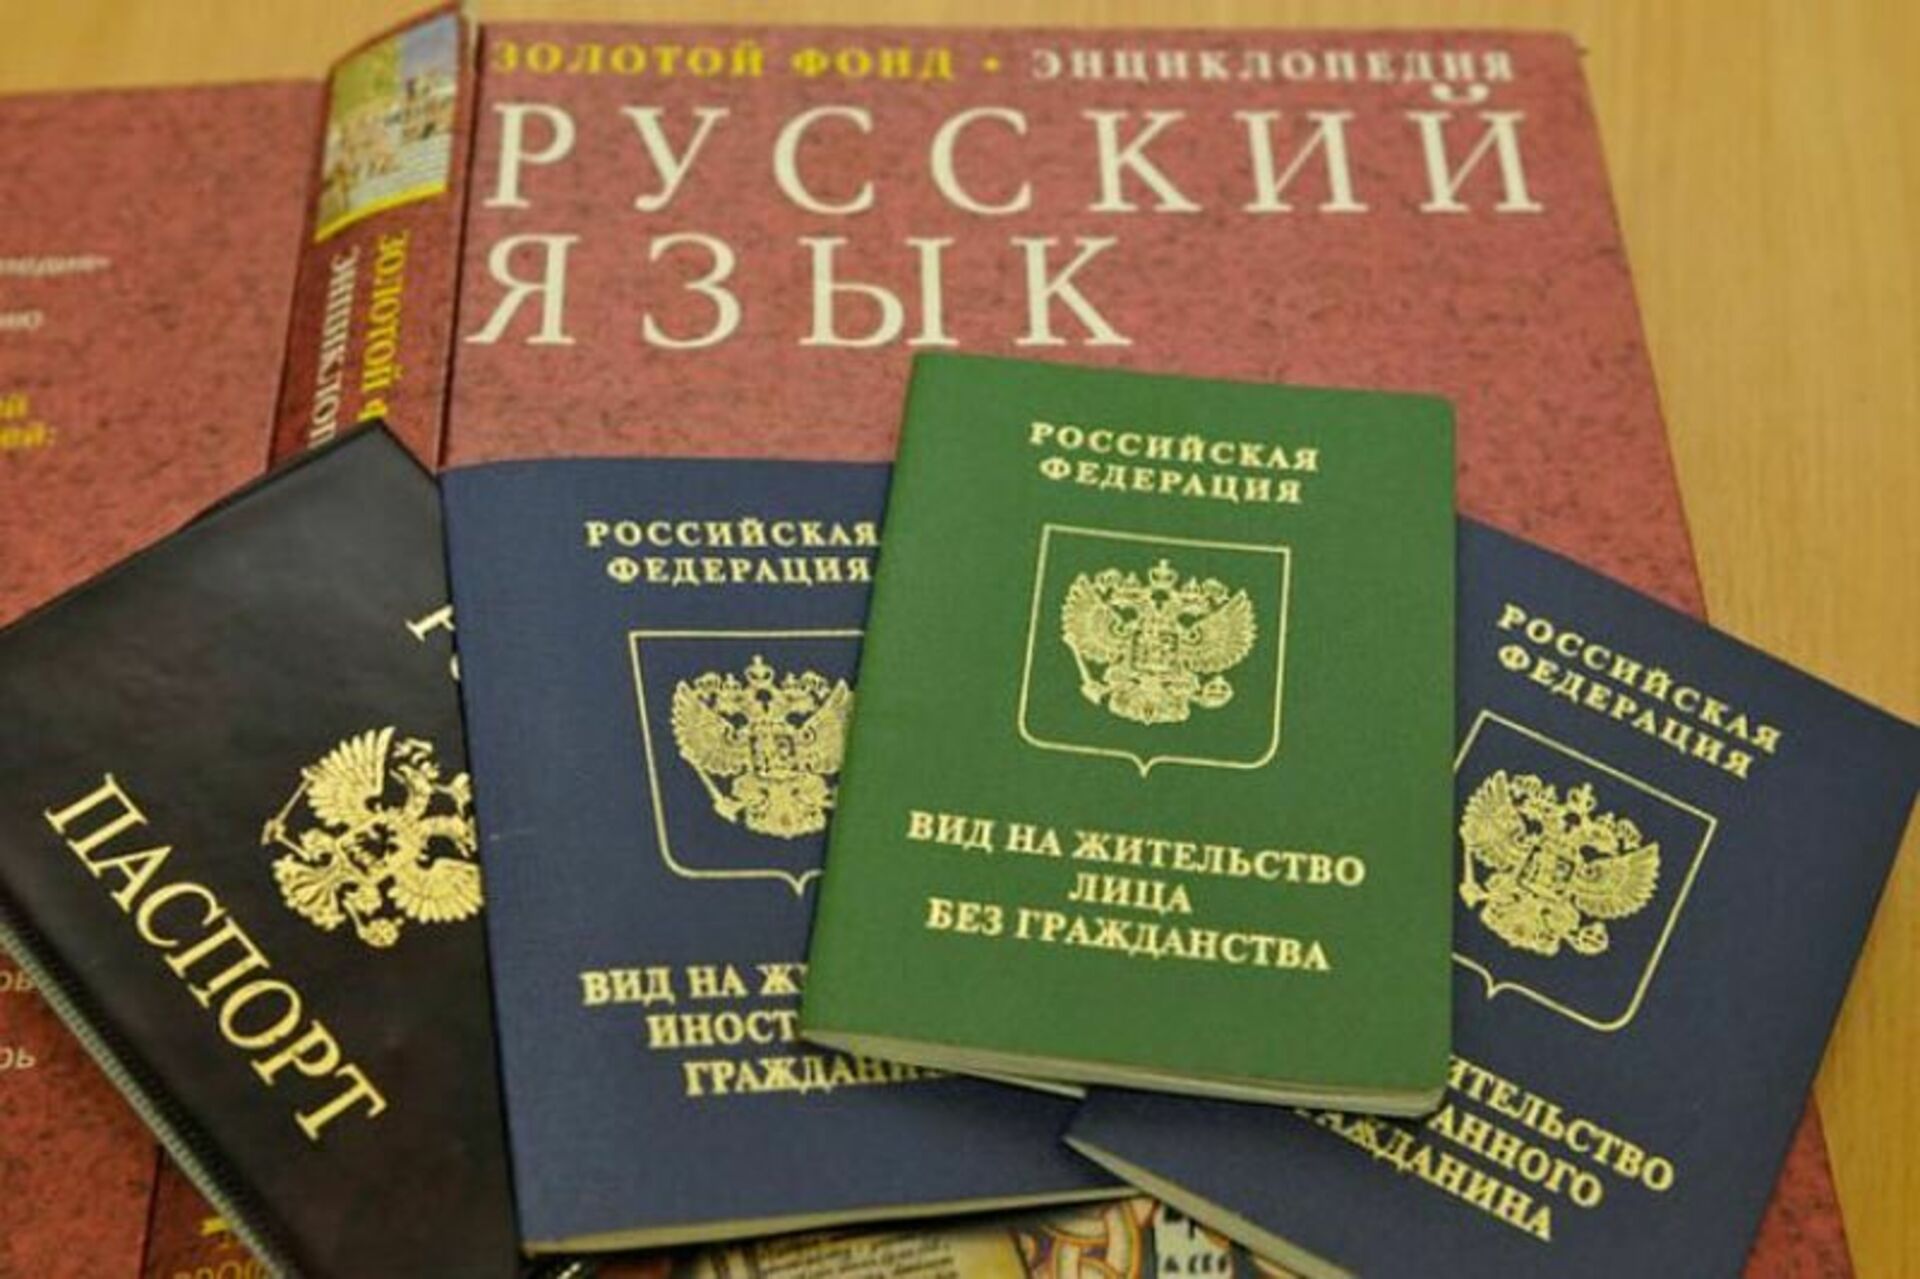 Внж по странам. Вид на жительство в России. Лицо без гражданства. ВНЖ лица без гражданства в РФ.